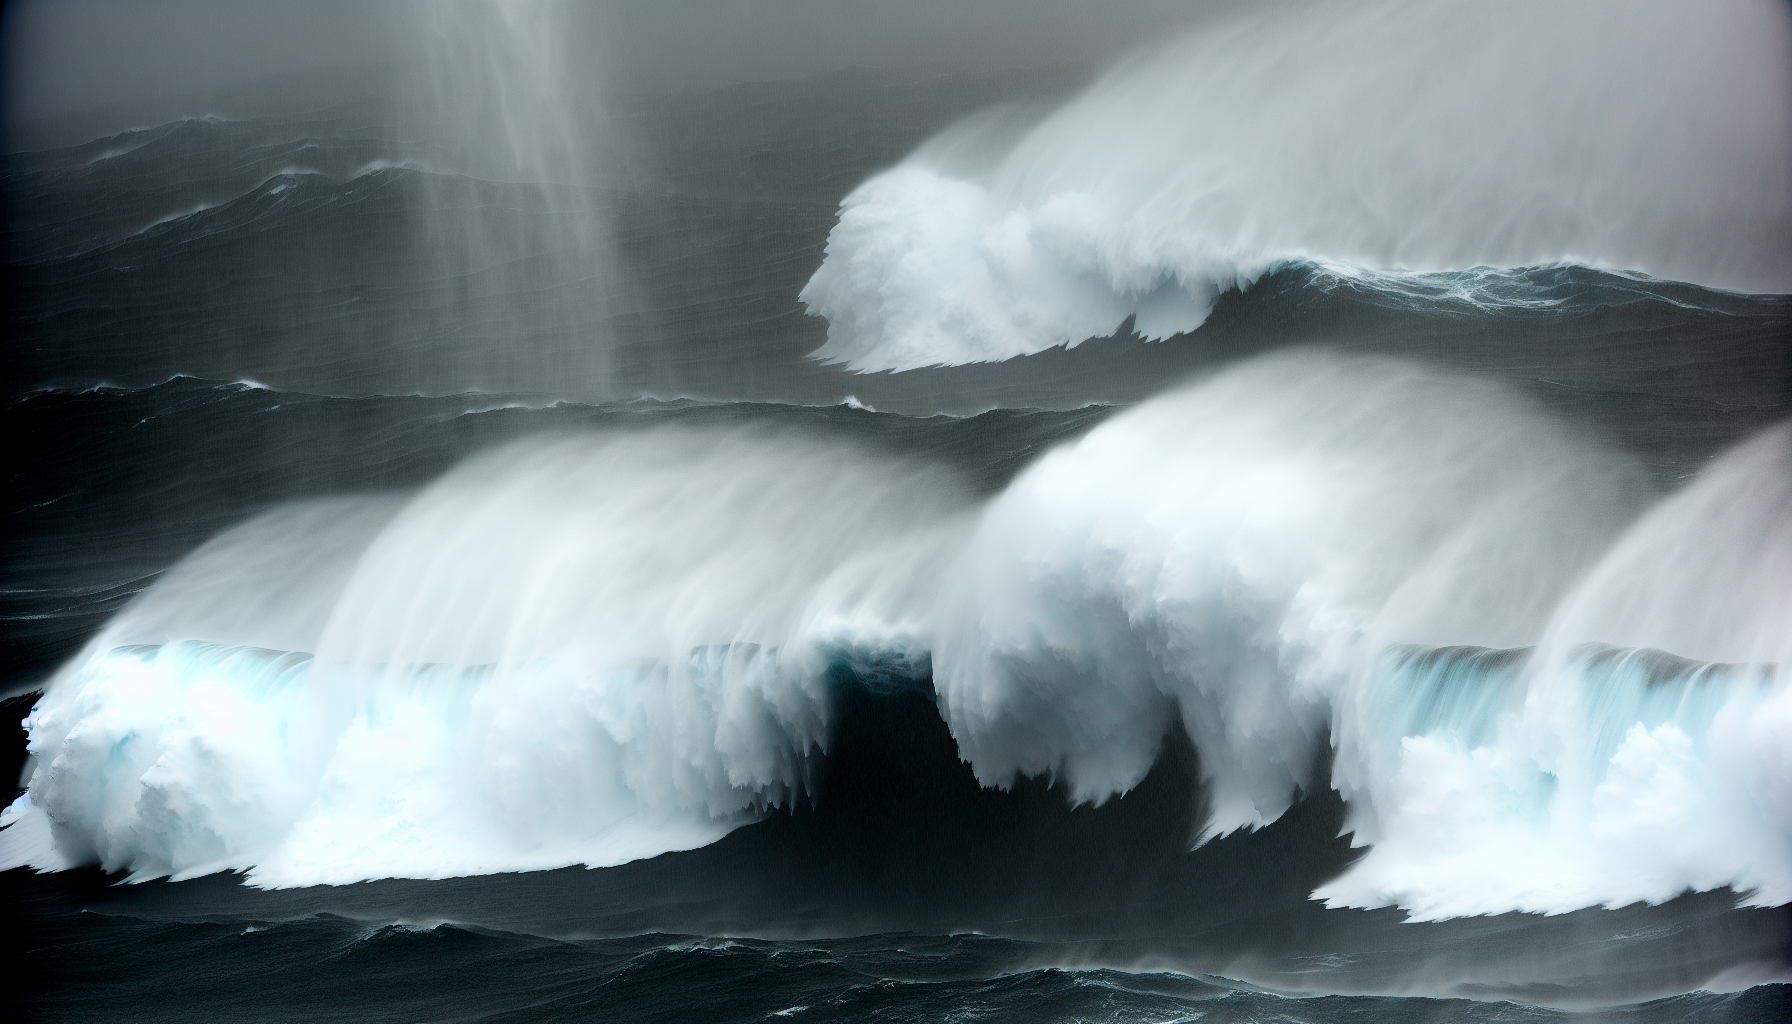 ocean waves in a storm